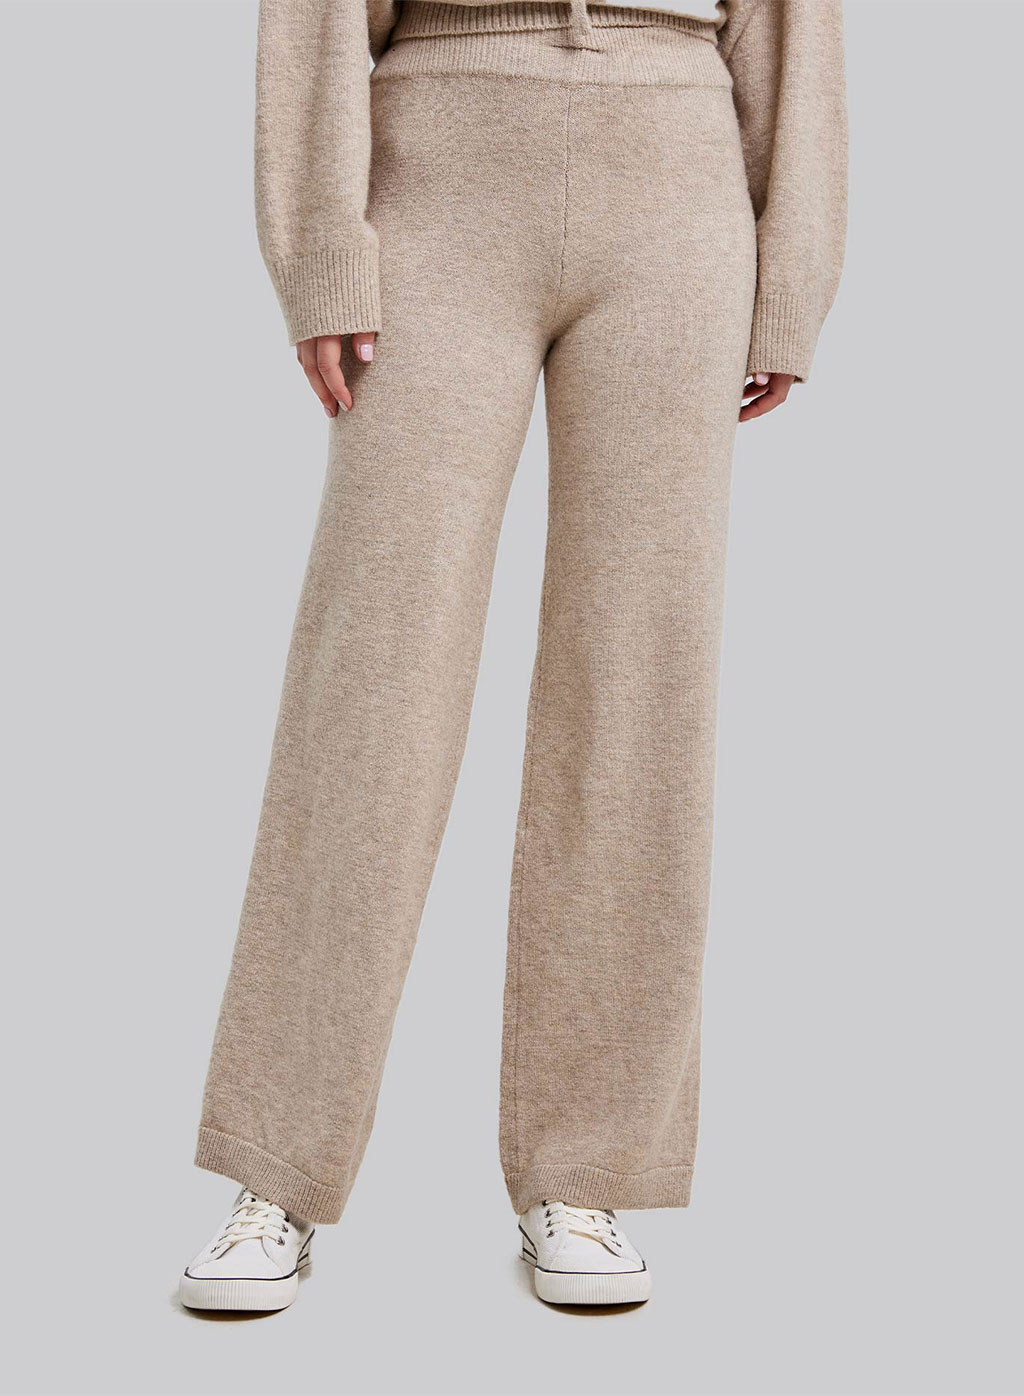 Buy la Vie en Rose Cable Knit Wide Leg Pants for Women Online  Tata CLiQ  Luxury